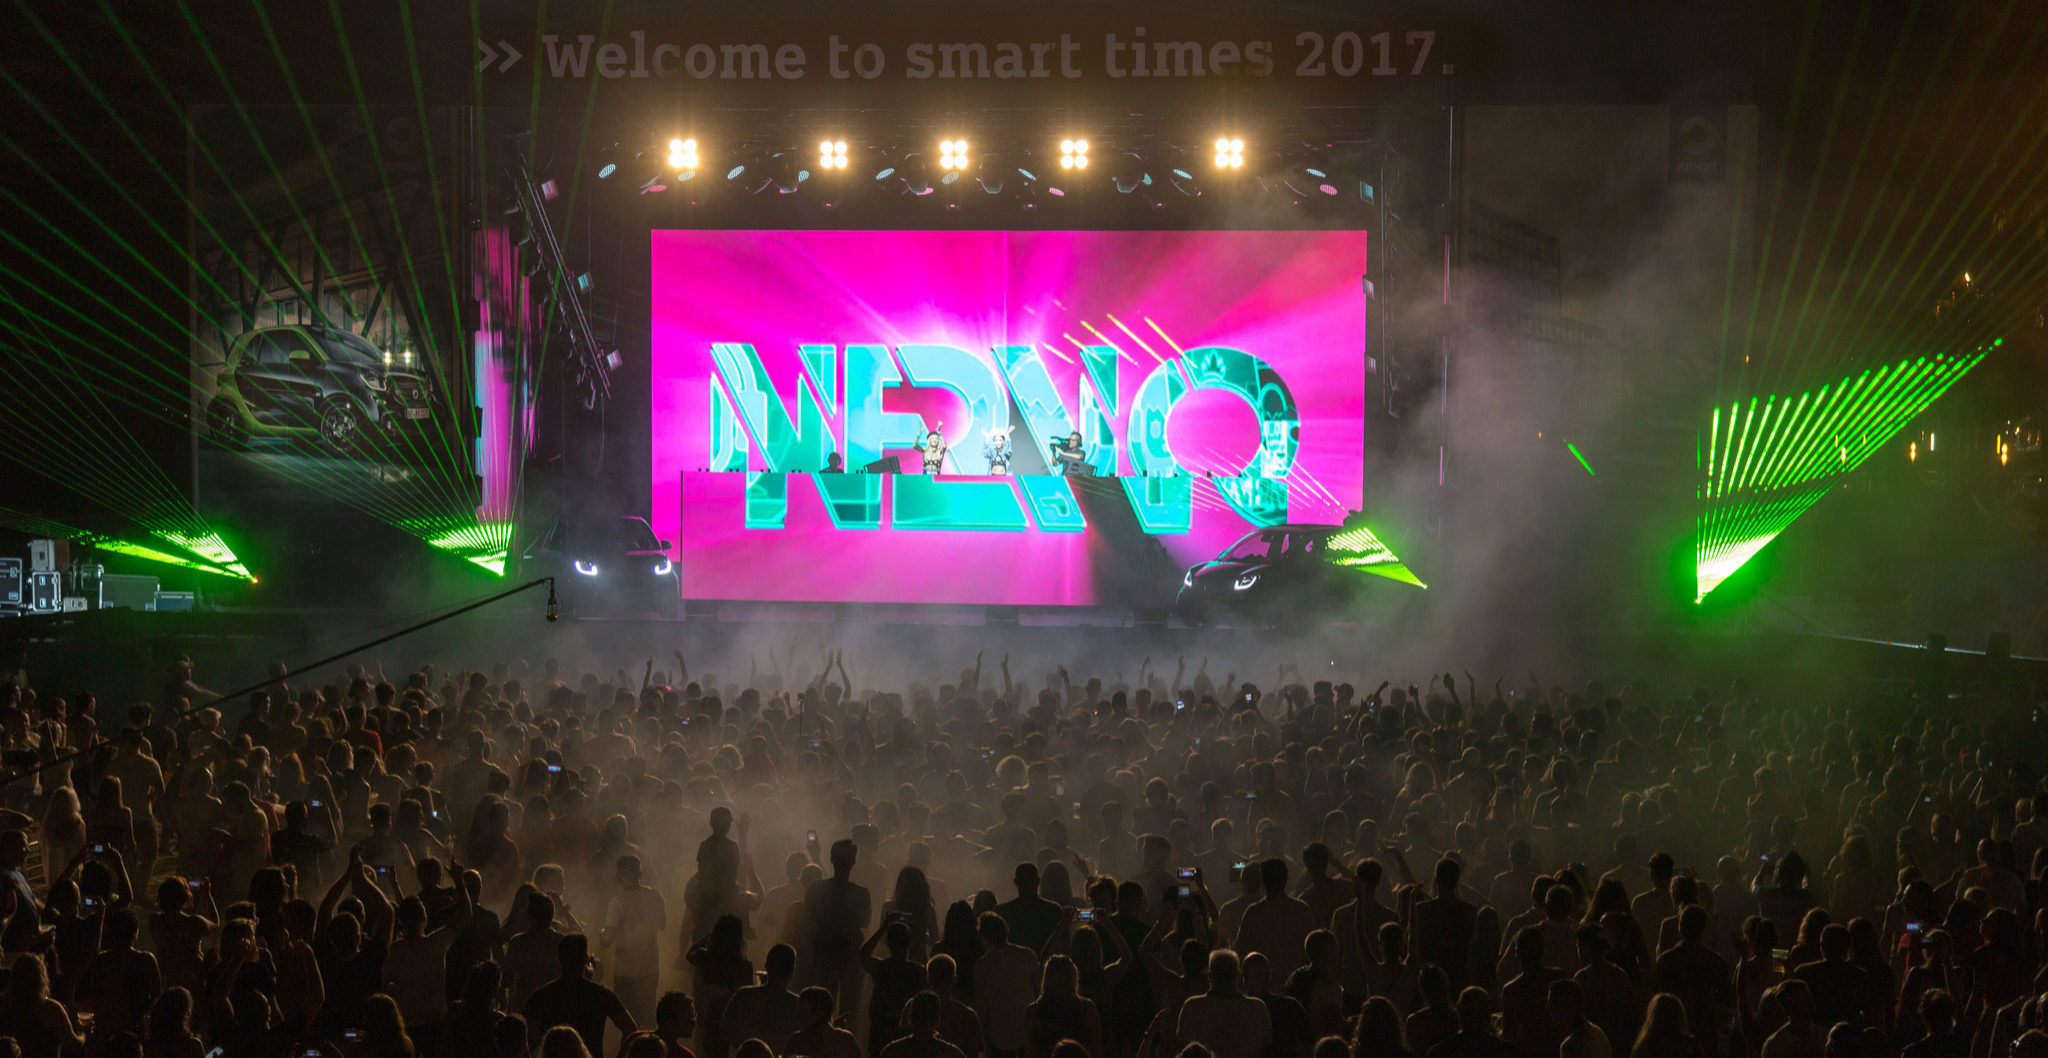 Nervo triunf en Smart Times 2017